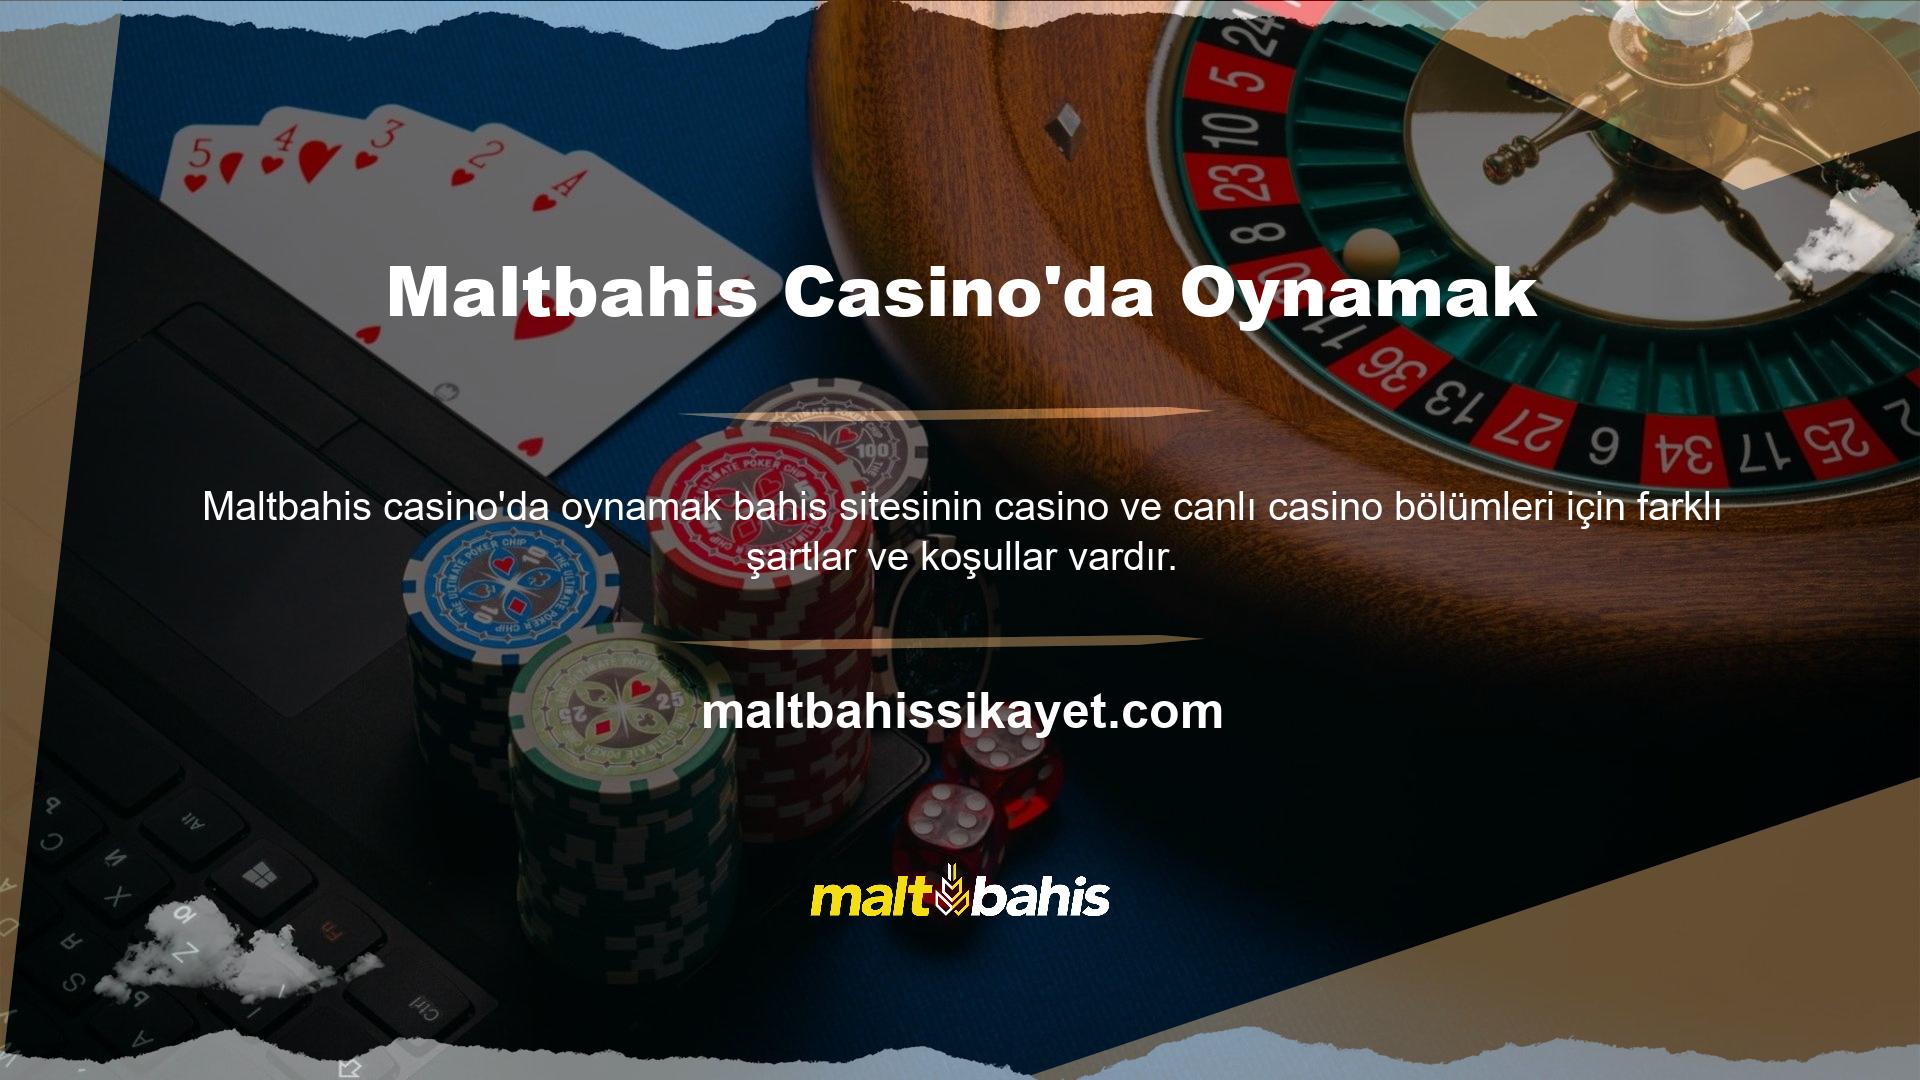 Maltbahis Casino'da oynamak, şansınızı denediğiniz alana odaklanmanızı gerektirir